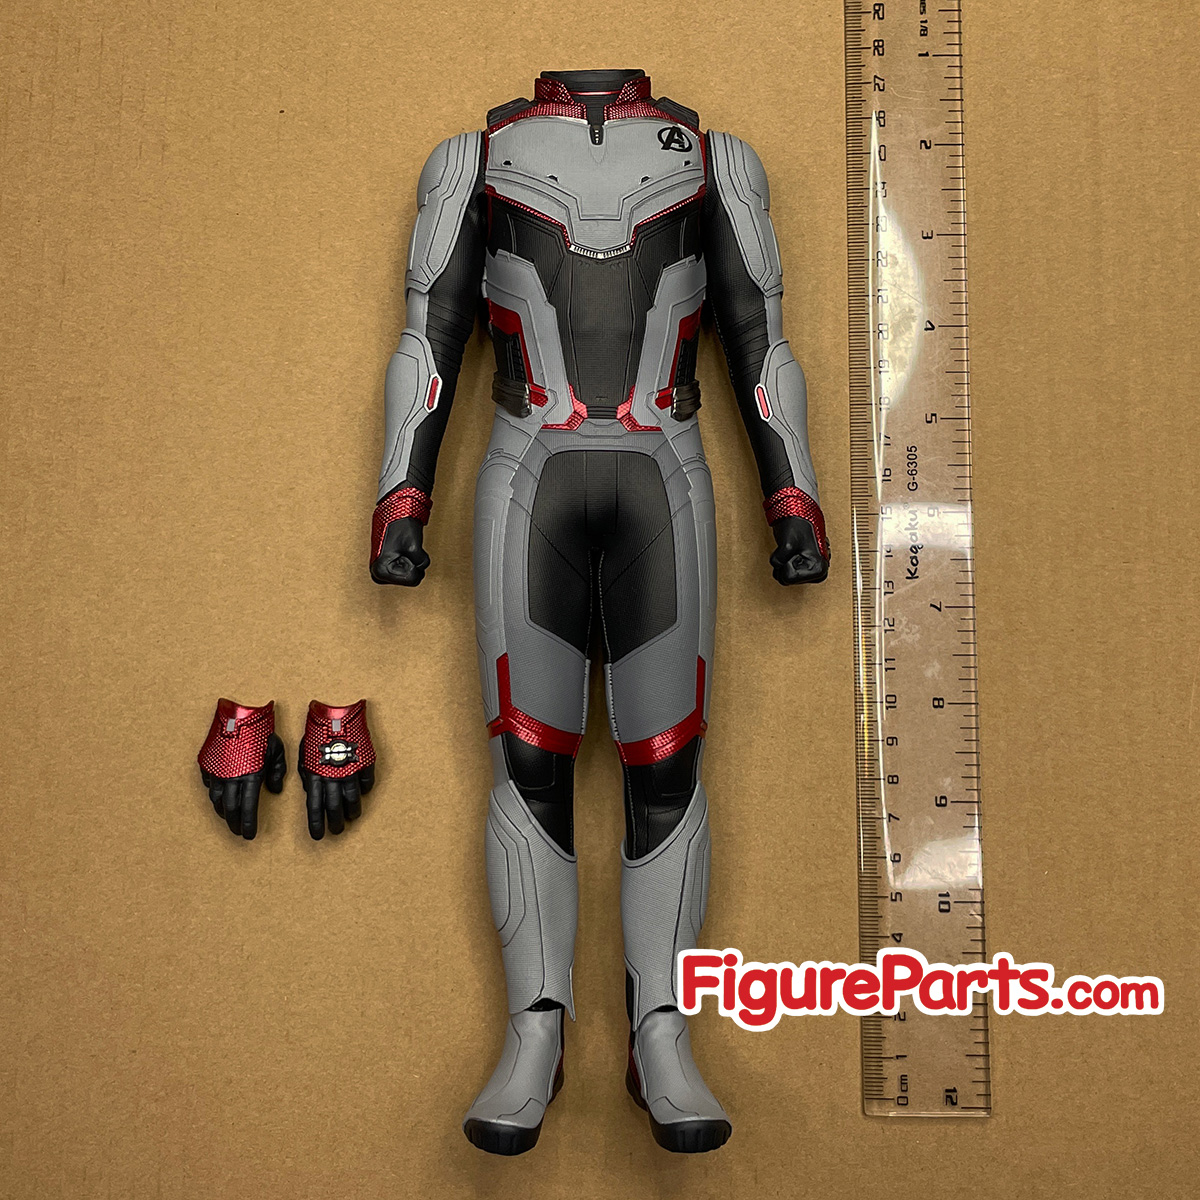 Body - Tony Stark Team Suit - Avengers Endgame - Hot Toys mms537